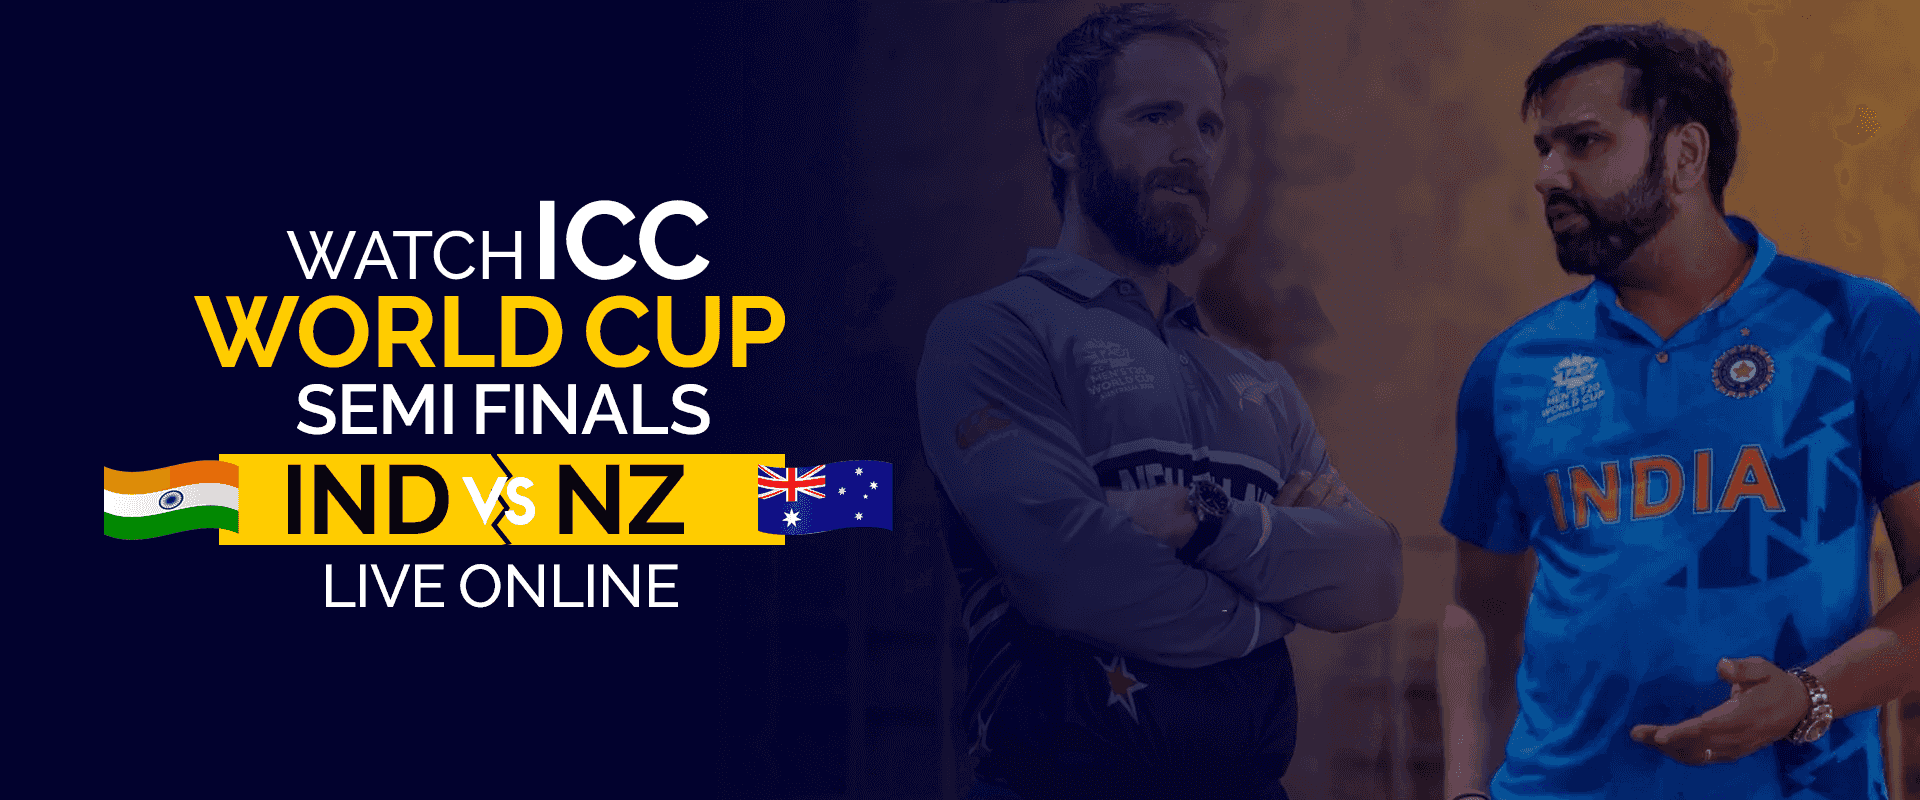 Regardez les demi-finales de la Coupe du monde ICC IND vs NZ en direct en ligne